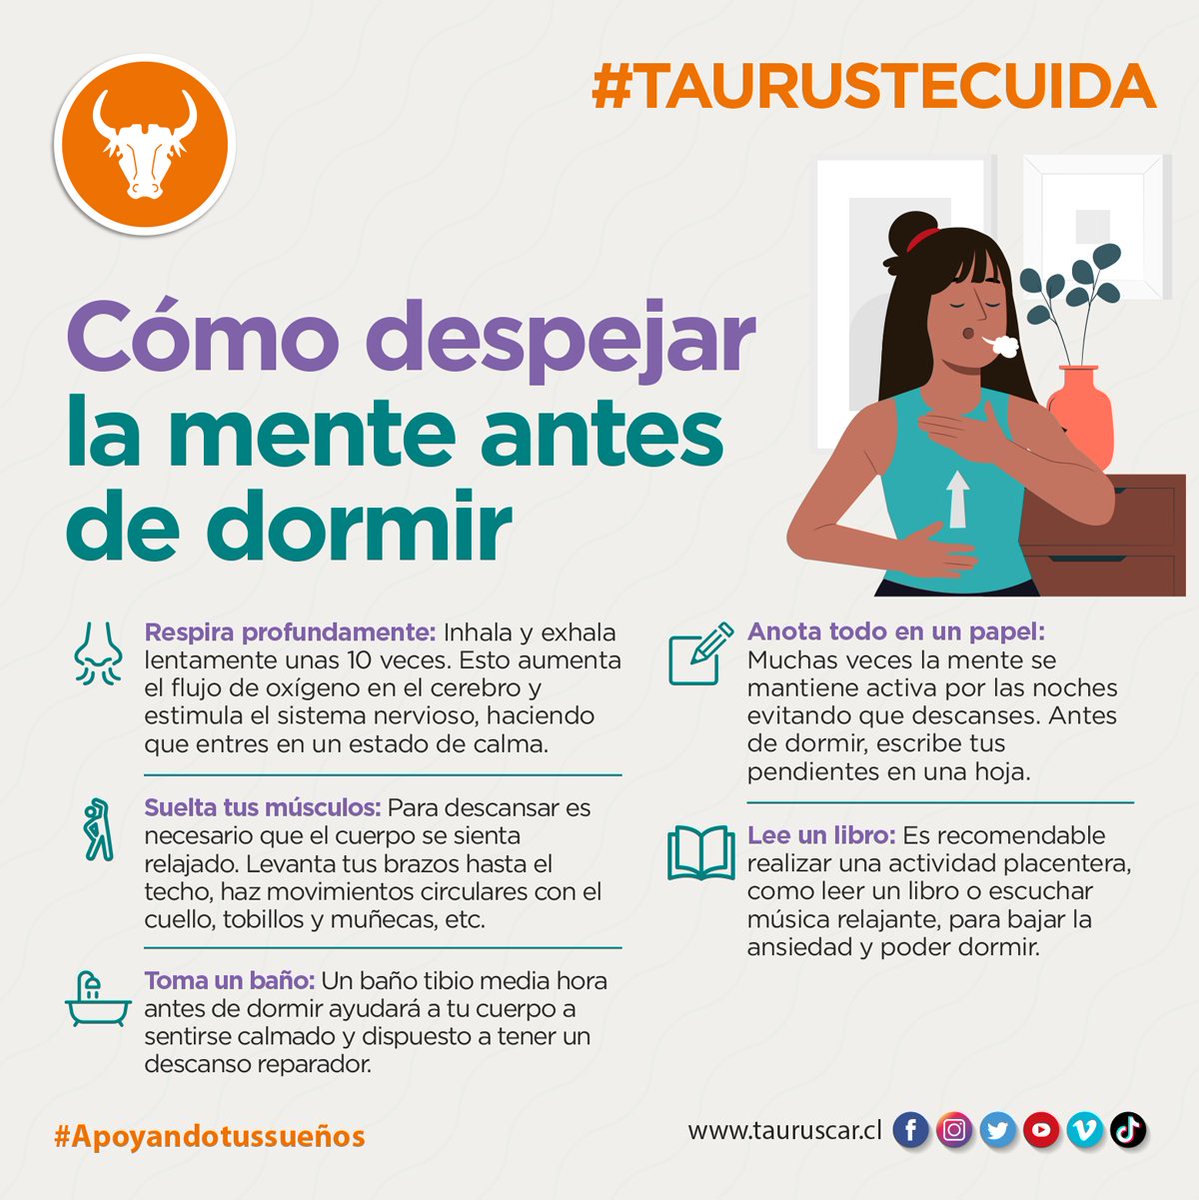 En Taurus te cuidamos...

Fuente: mejorconsalud.as.com/despejar-la-me…

#taurustecuida #apoyandotussueños #graciascarabineros #carabinerosdetodos #verdelegion #fuerzacarabineros #Santiago #chile #carabineros #chilenos